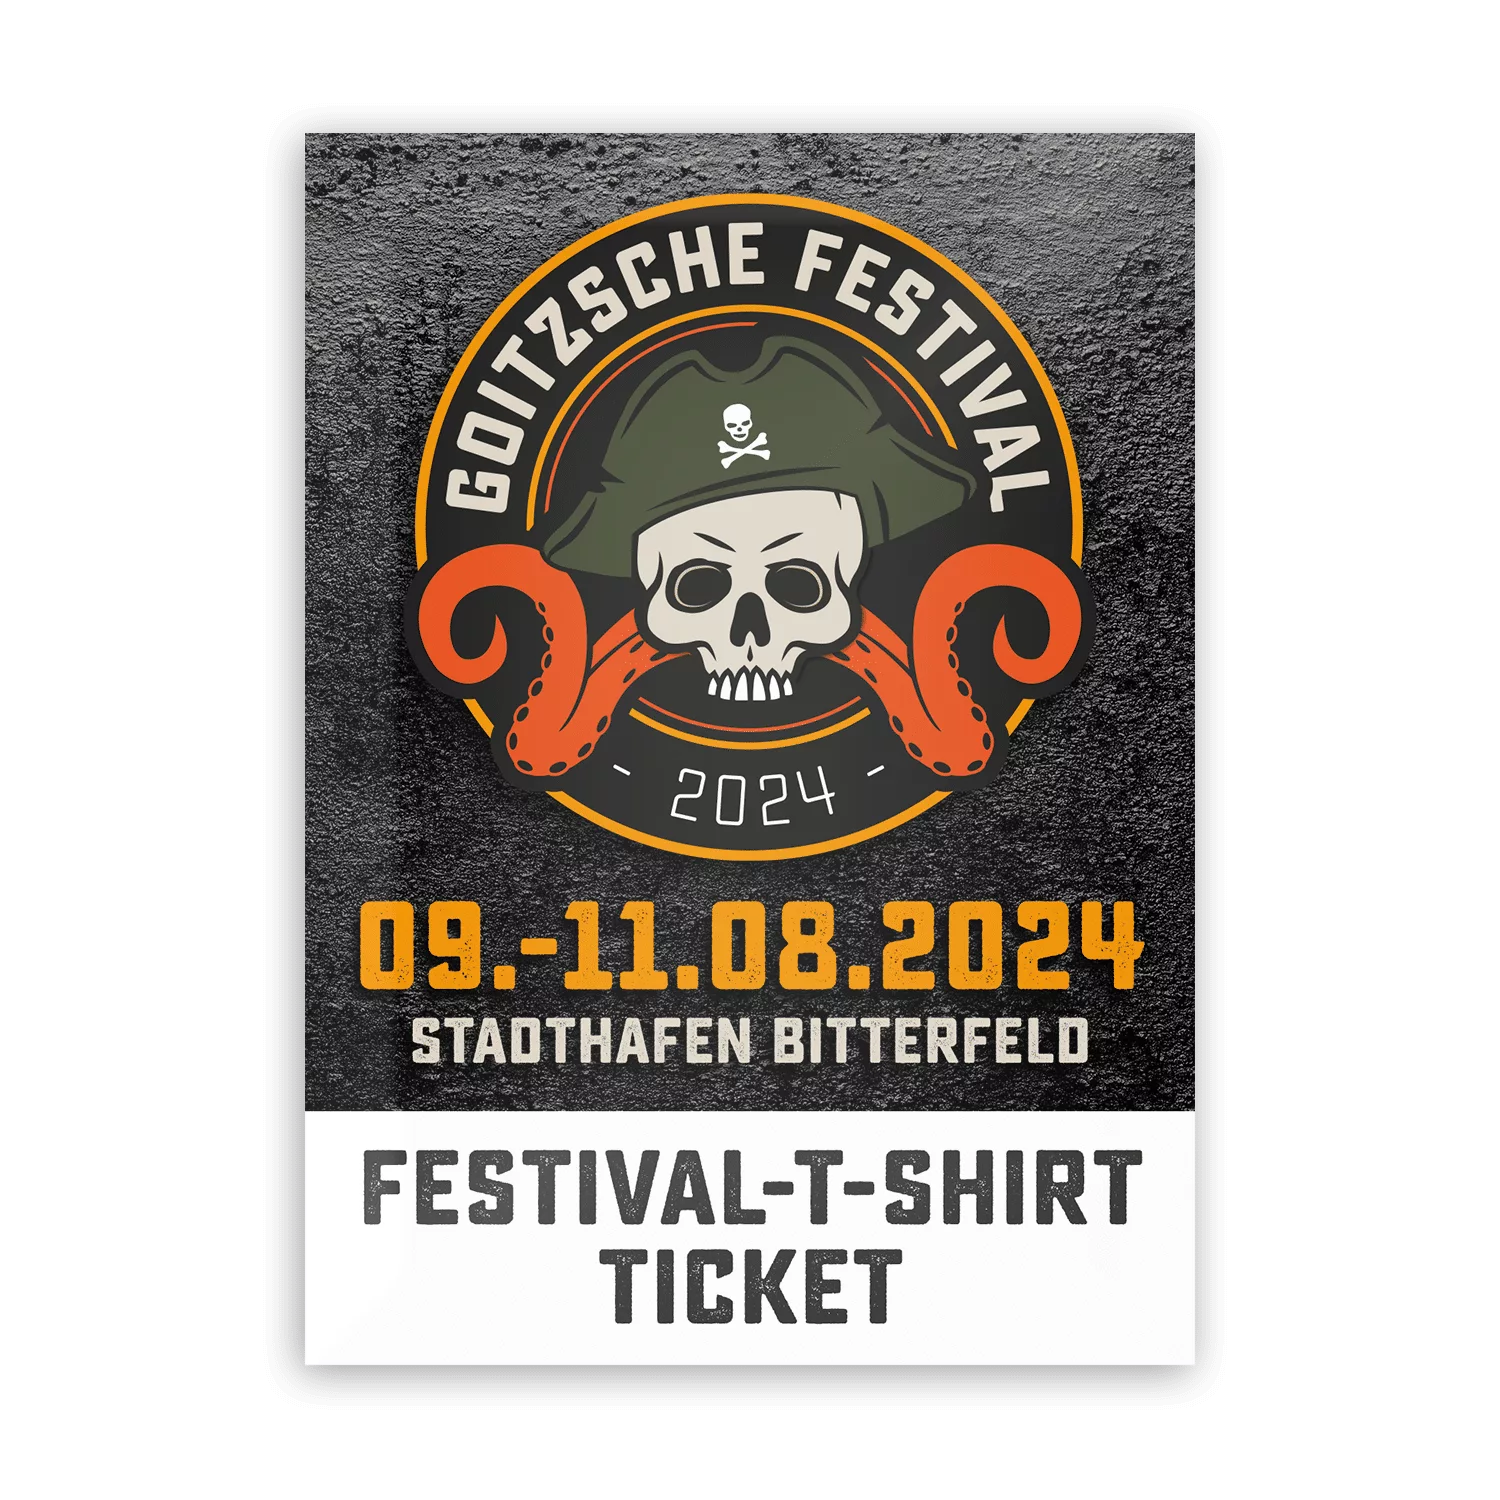 Goitzsche Festival Festival T Shirt Ticket